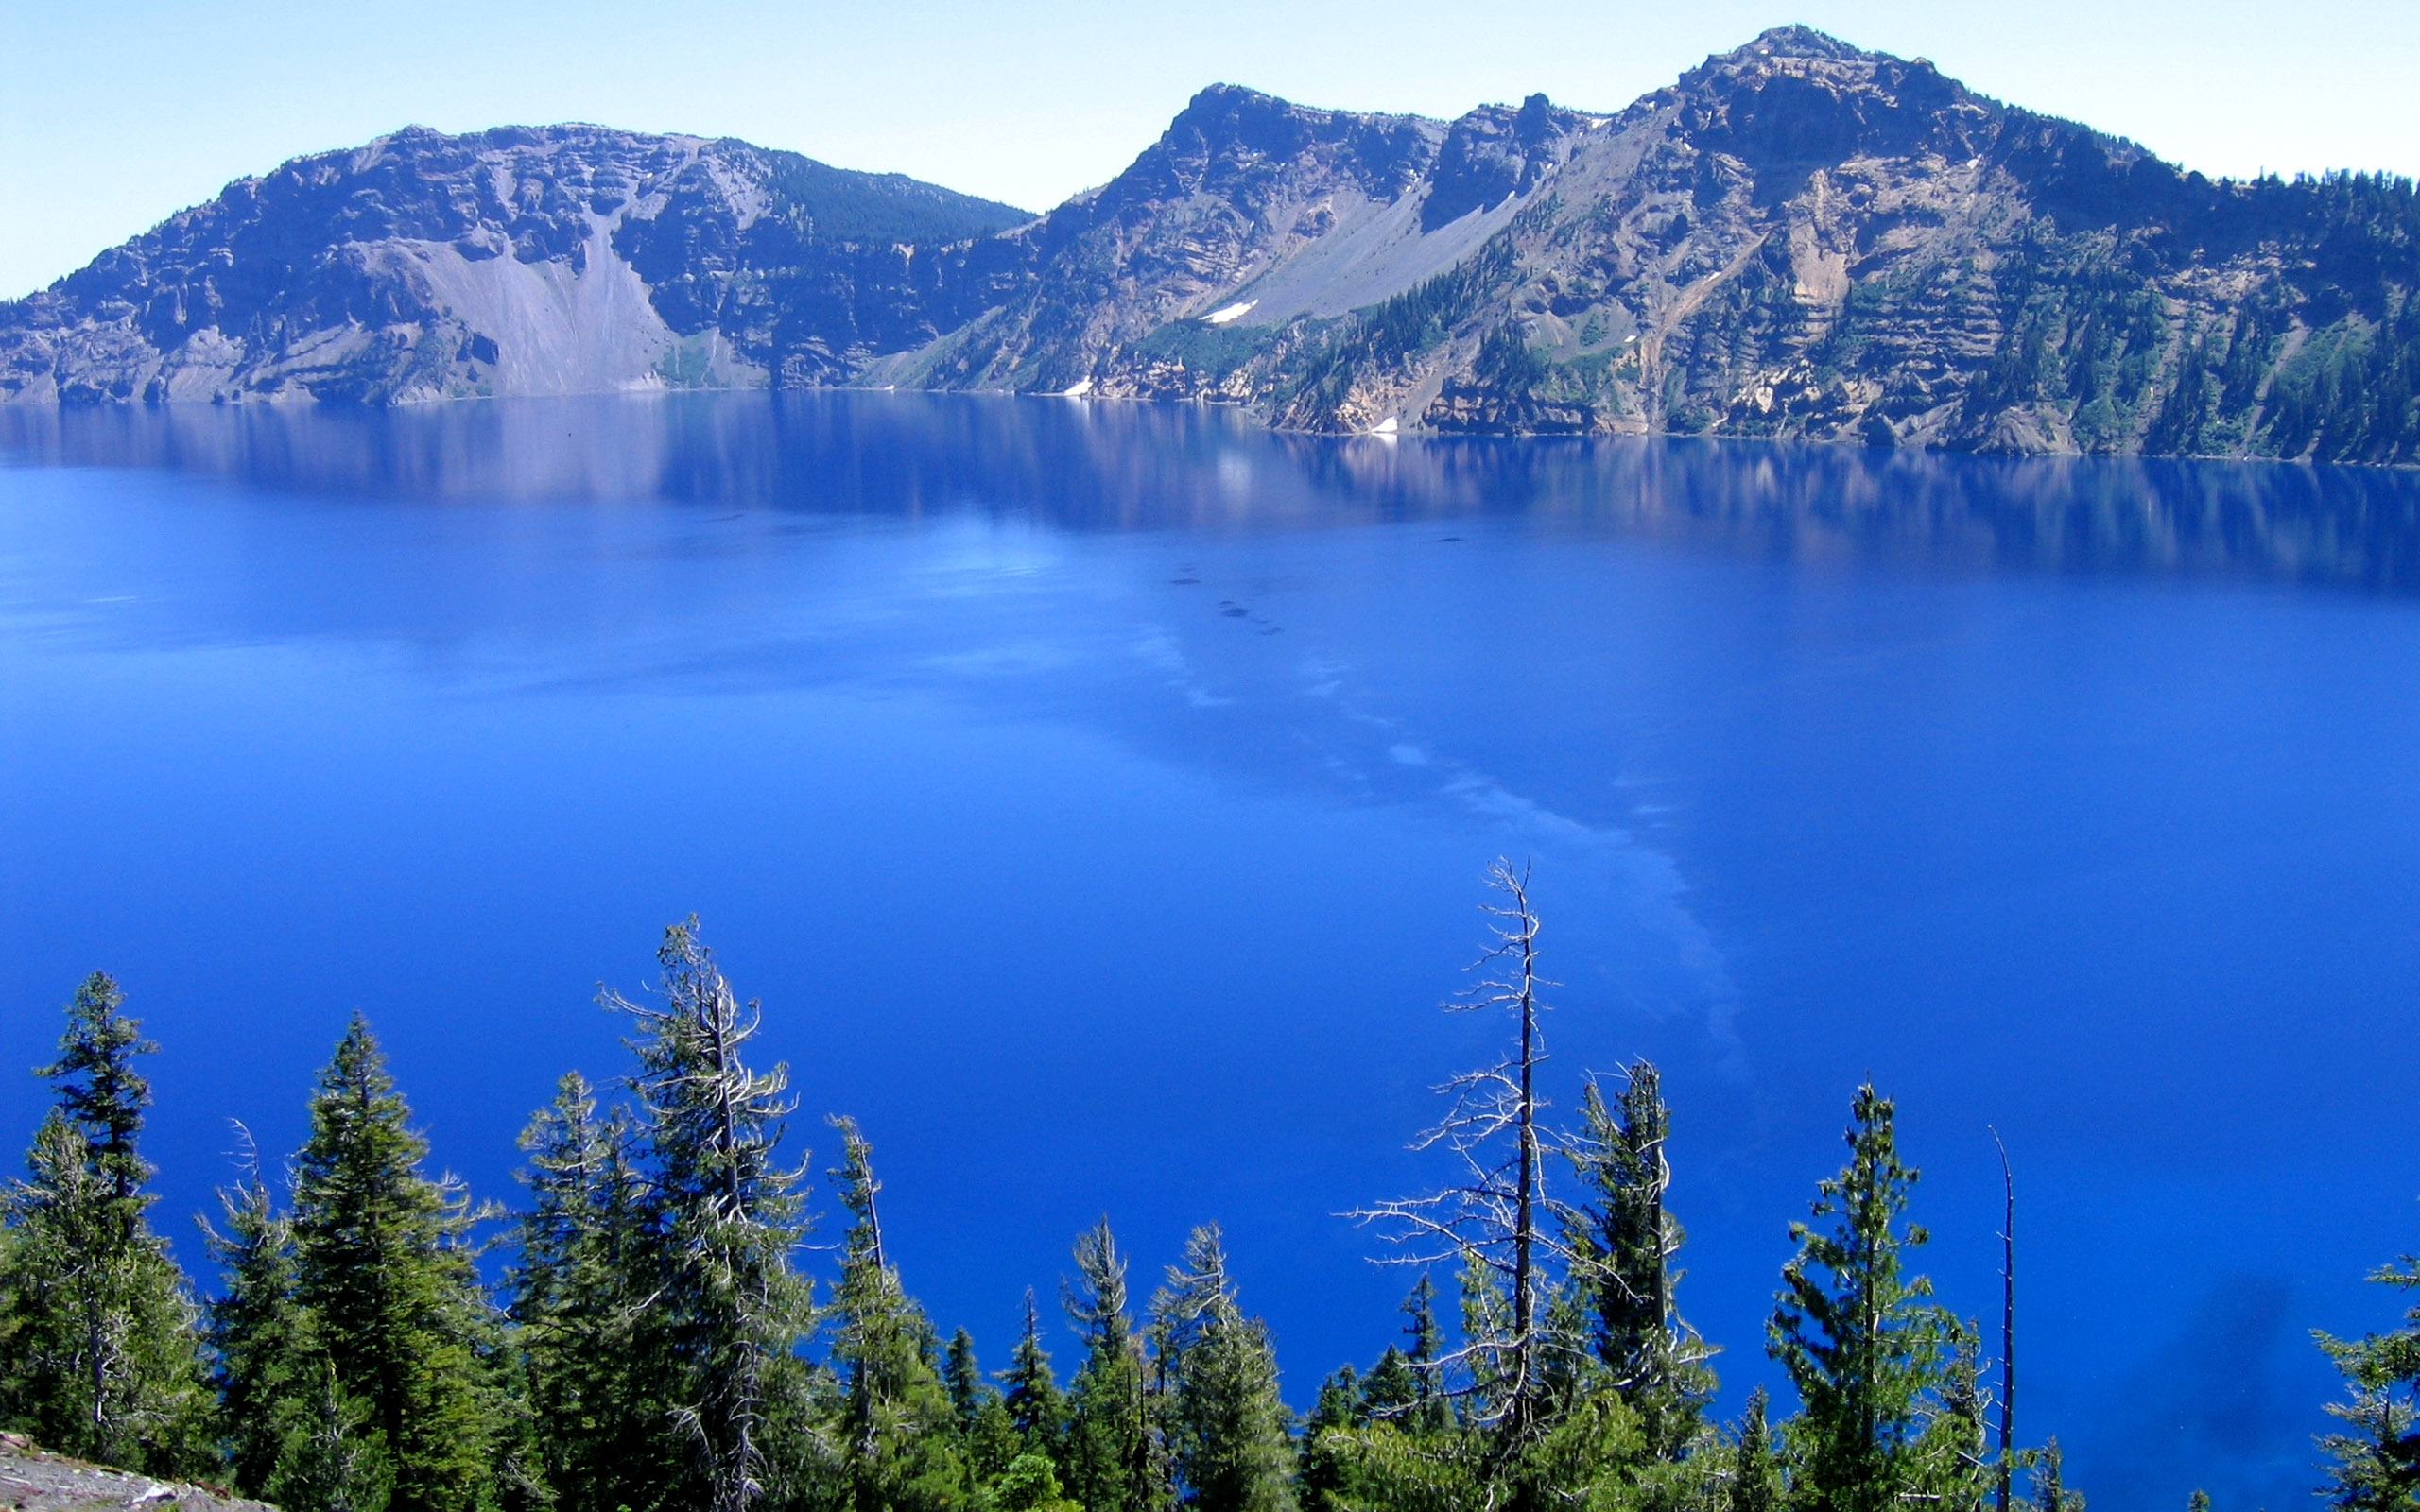 Top far view of Blue lake